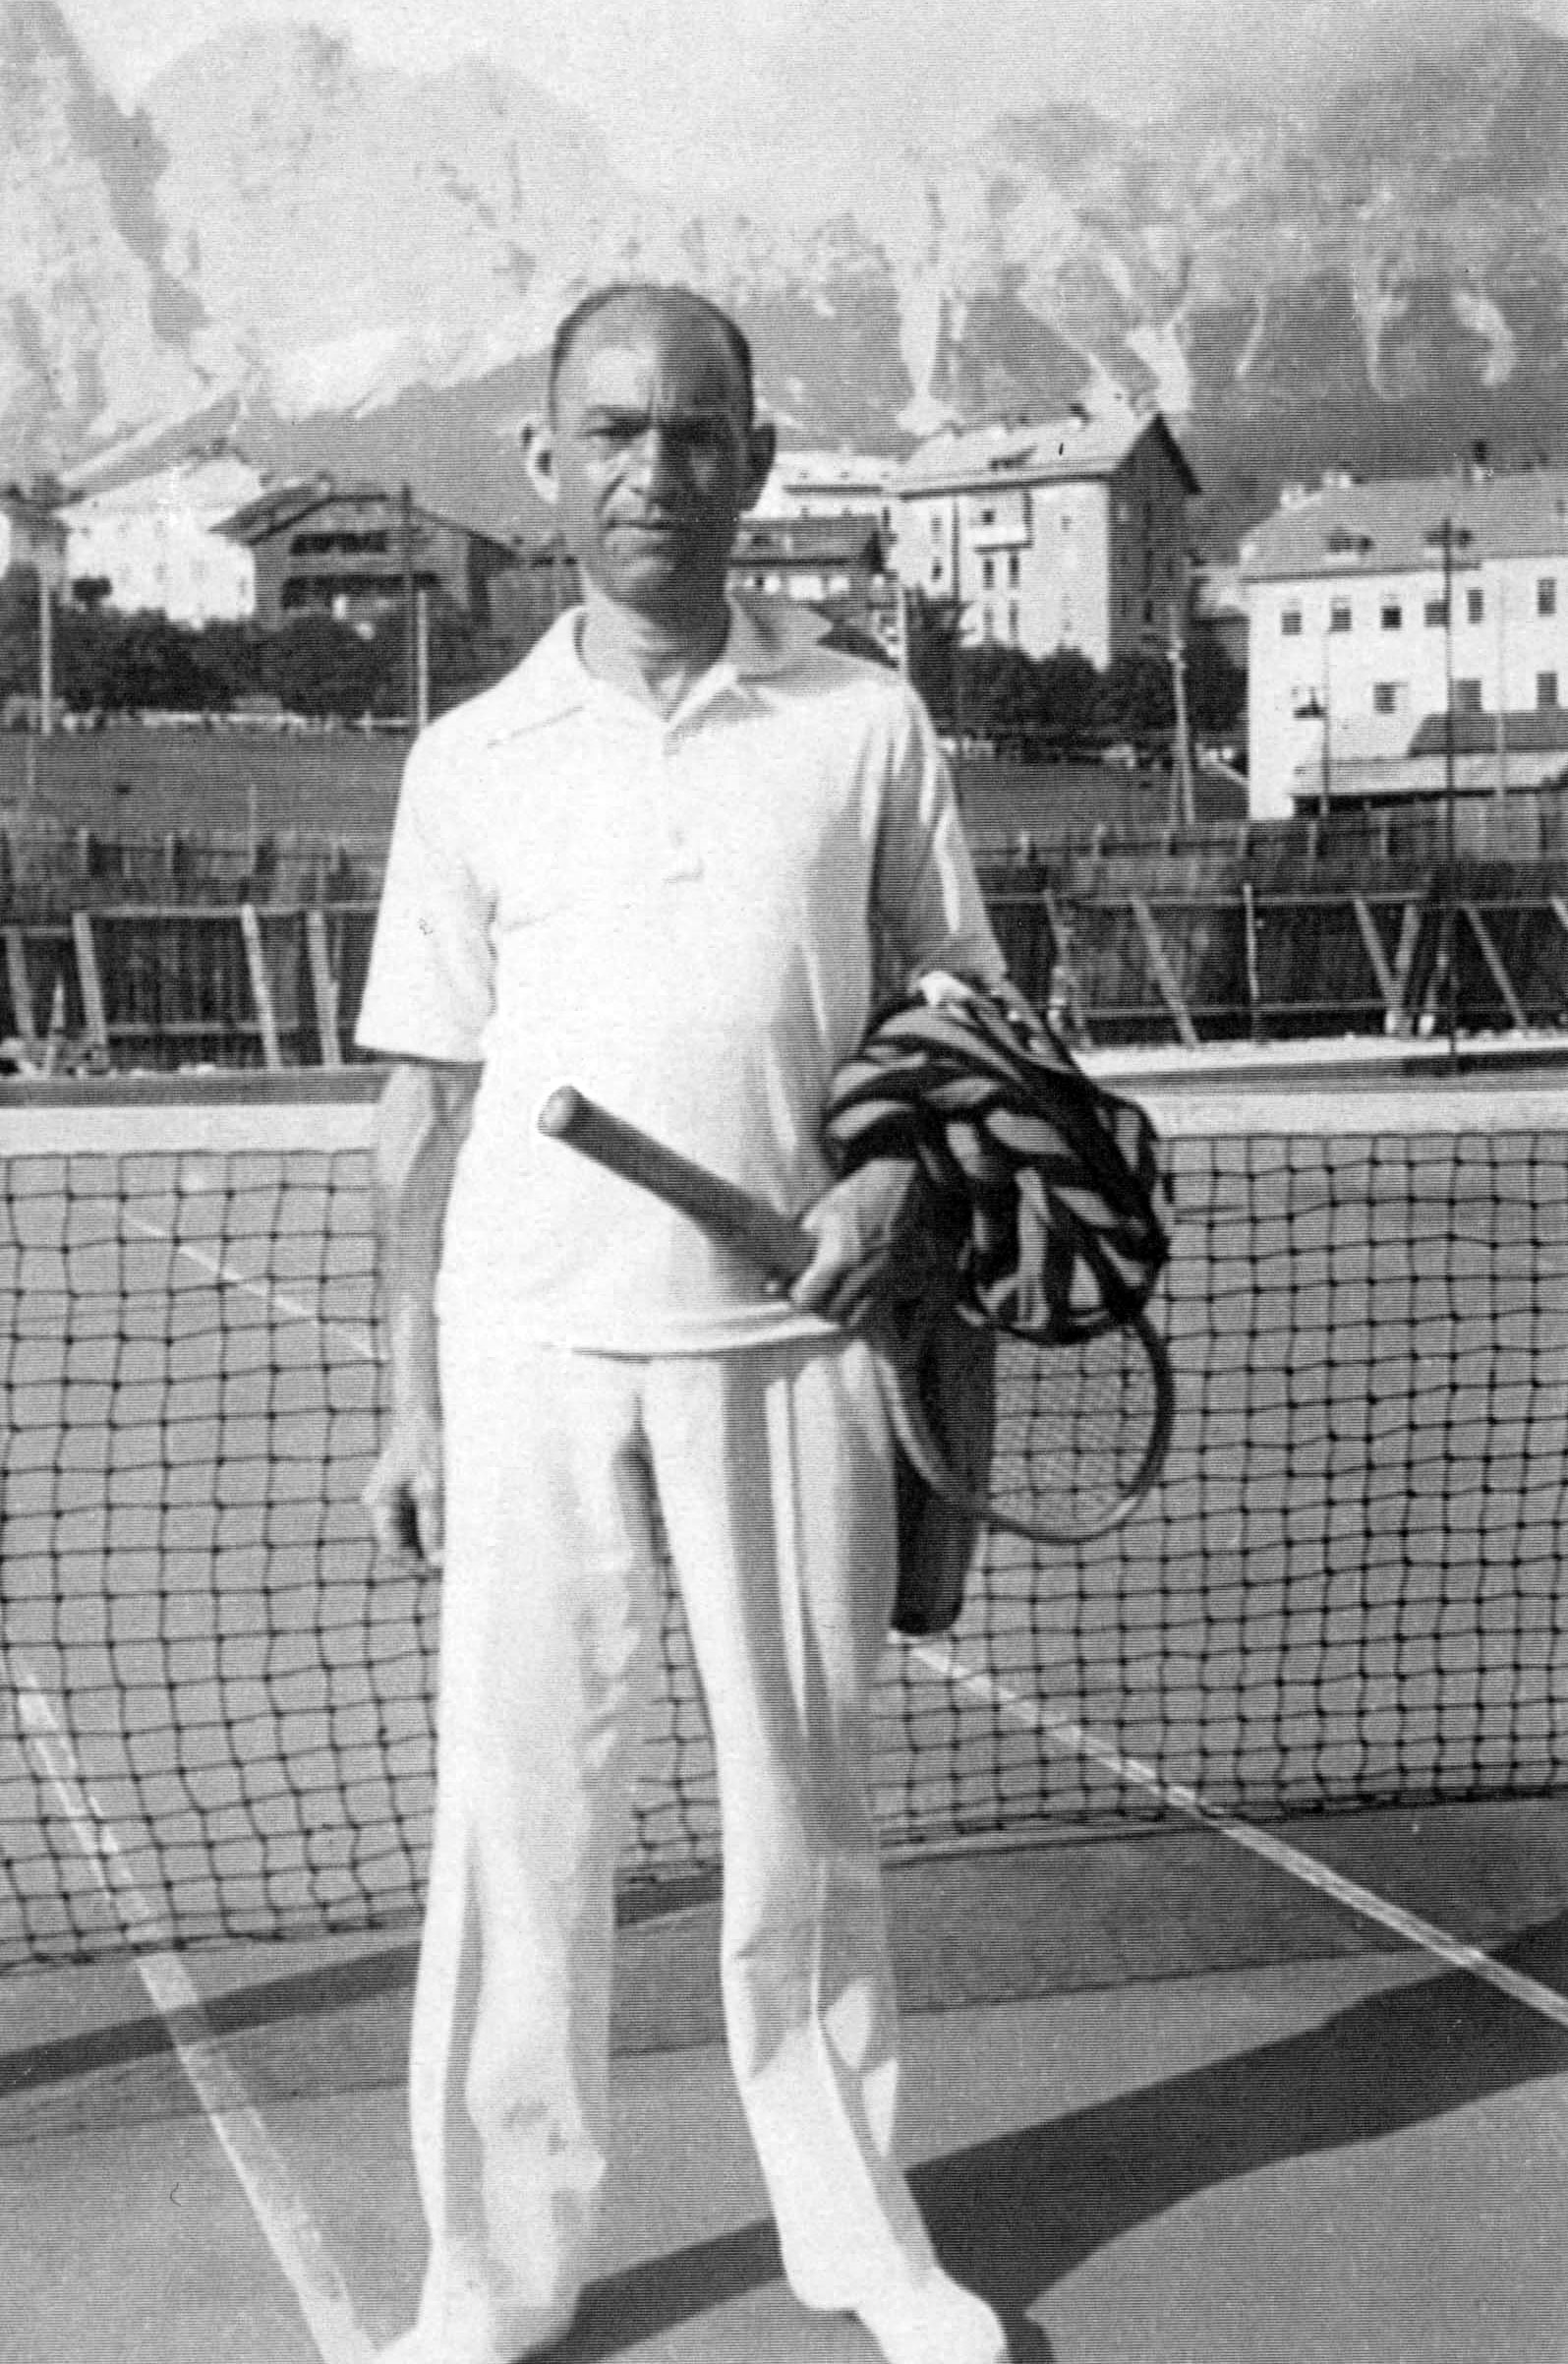 Franz Carlebach en la cancha de tenis. Mainz, Alemania, antes de la guerra